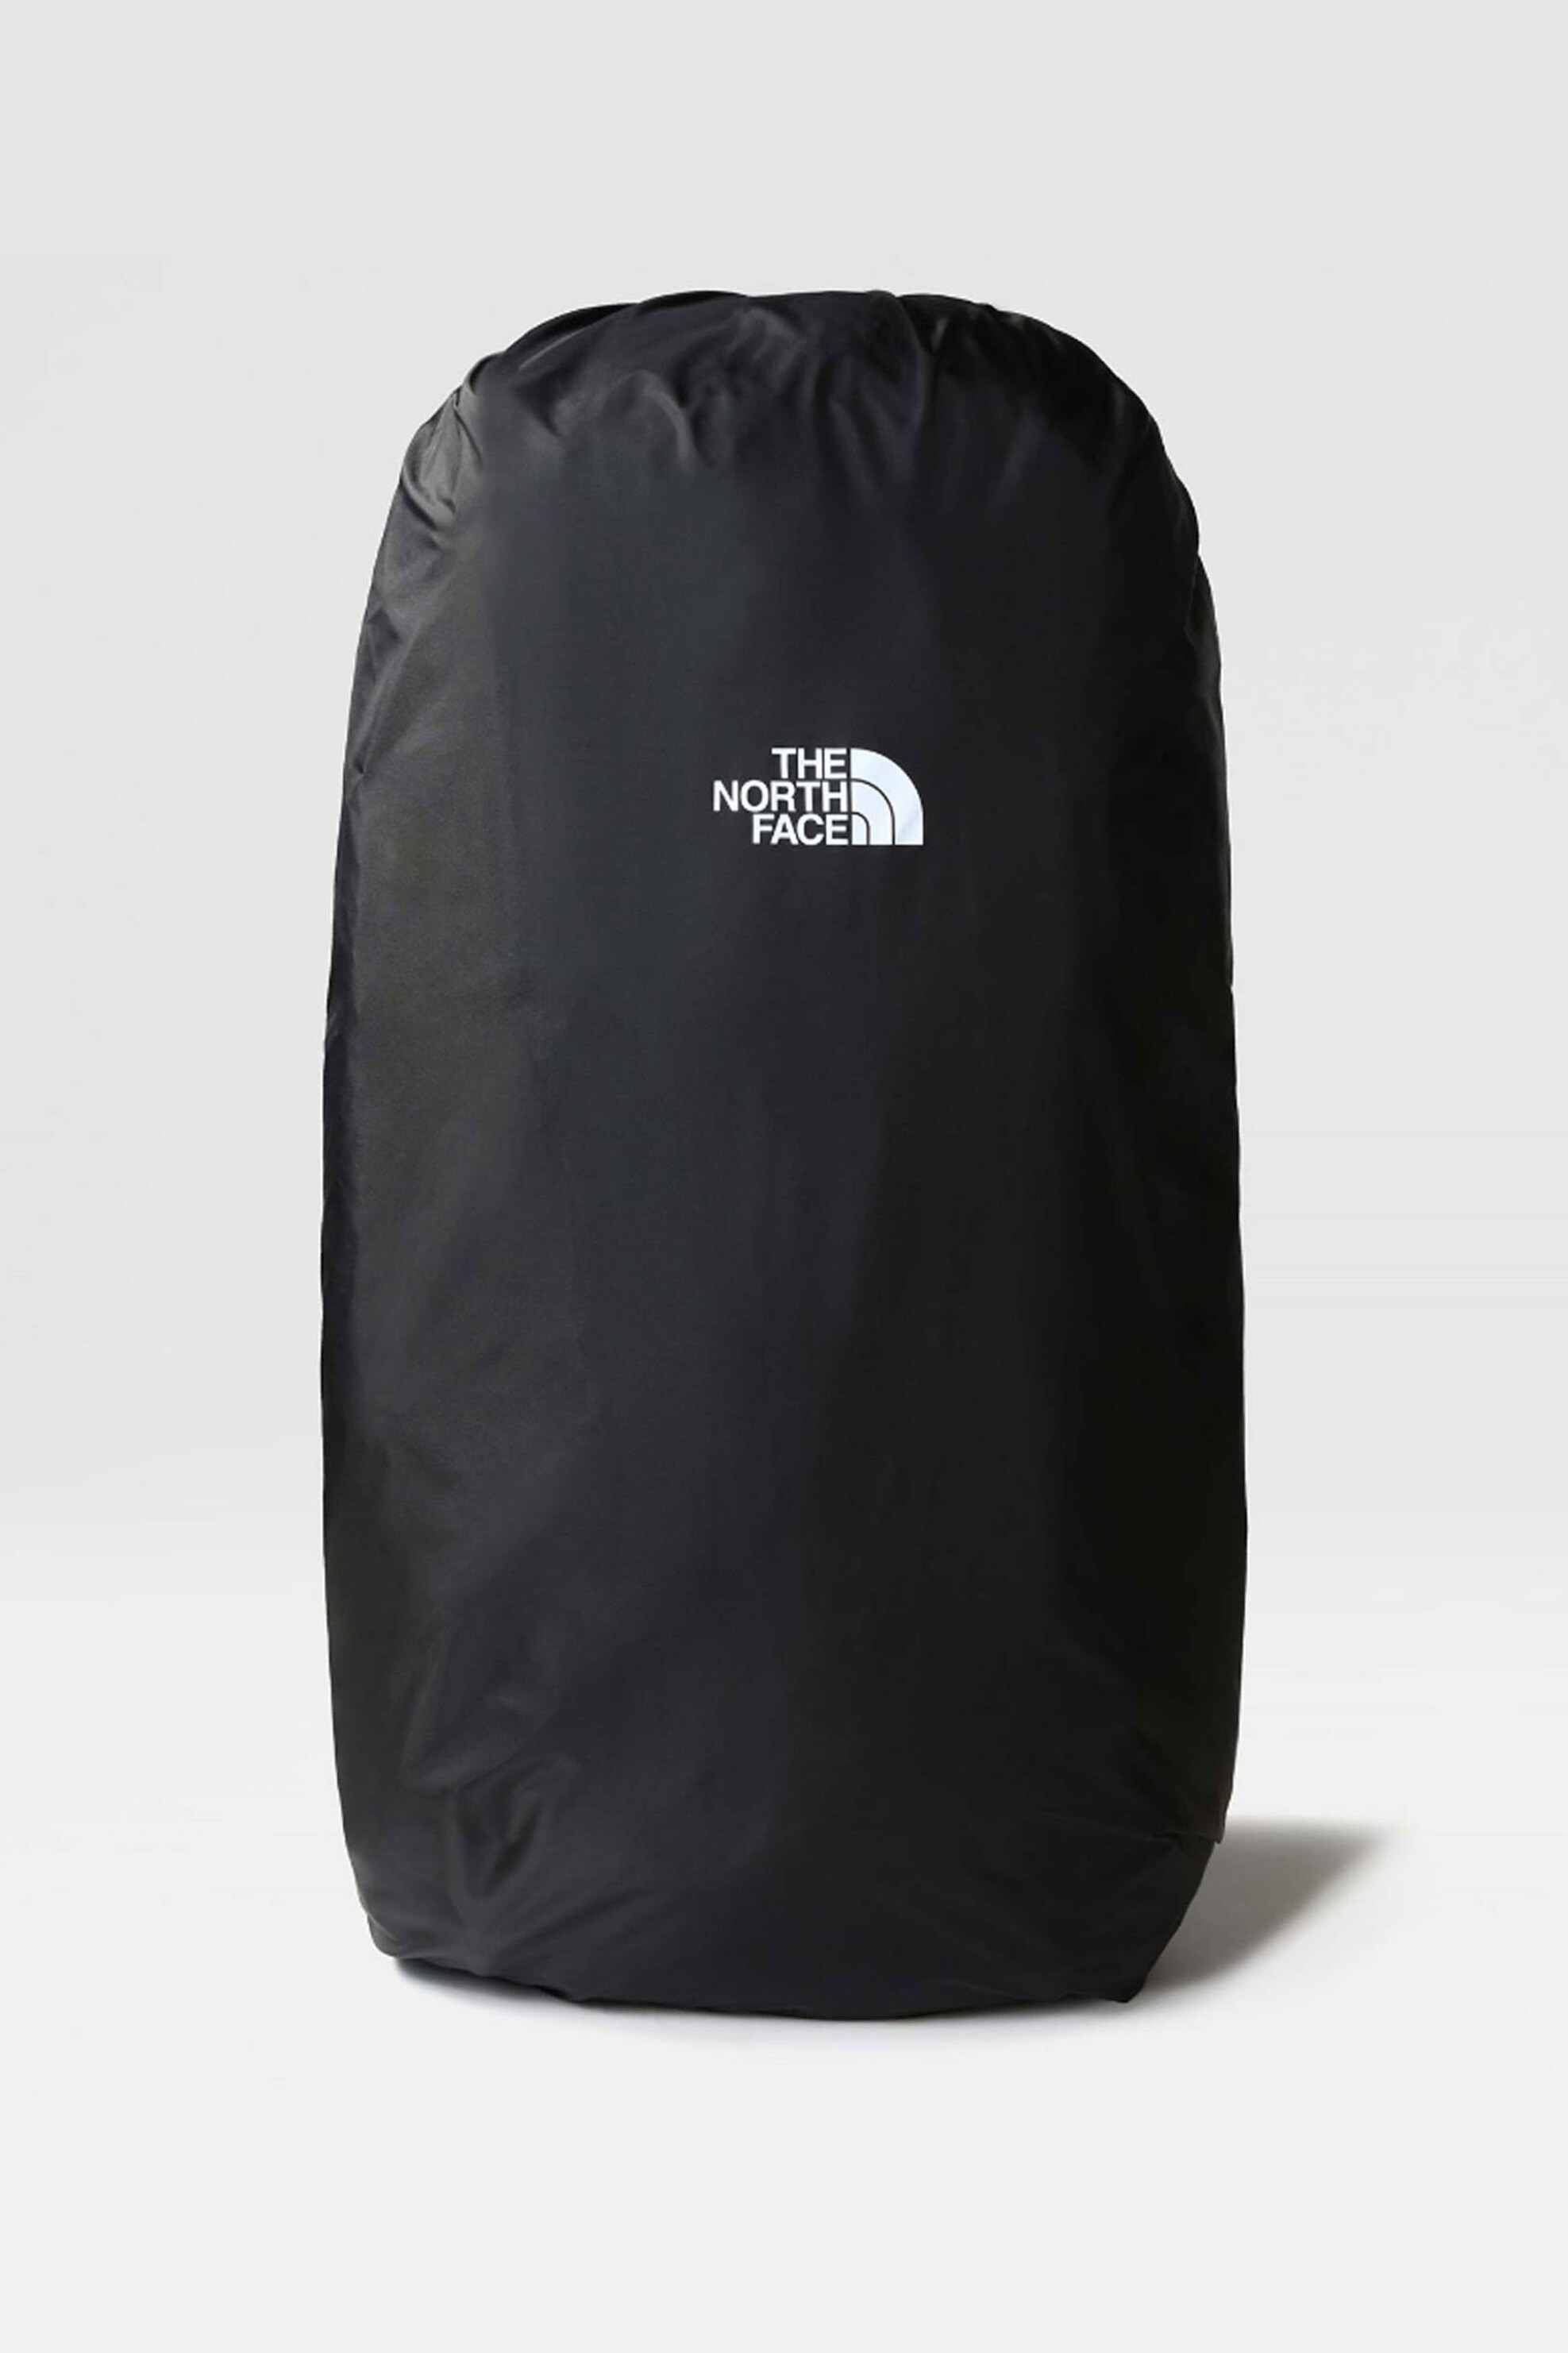 Ανδρική Μόδα > Ανδρικές Τσάντες > Ανδρικά Σακίδια & Backpacks The North Face unisex υφασμάτινη τσάντα αδιάβροχη με logo print "Rain Cover" - NF00CA7ZJK31 Μαύρο